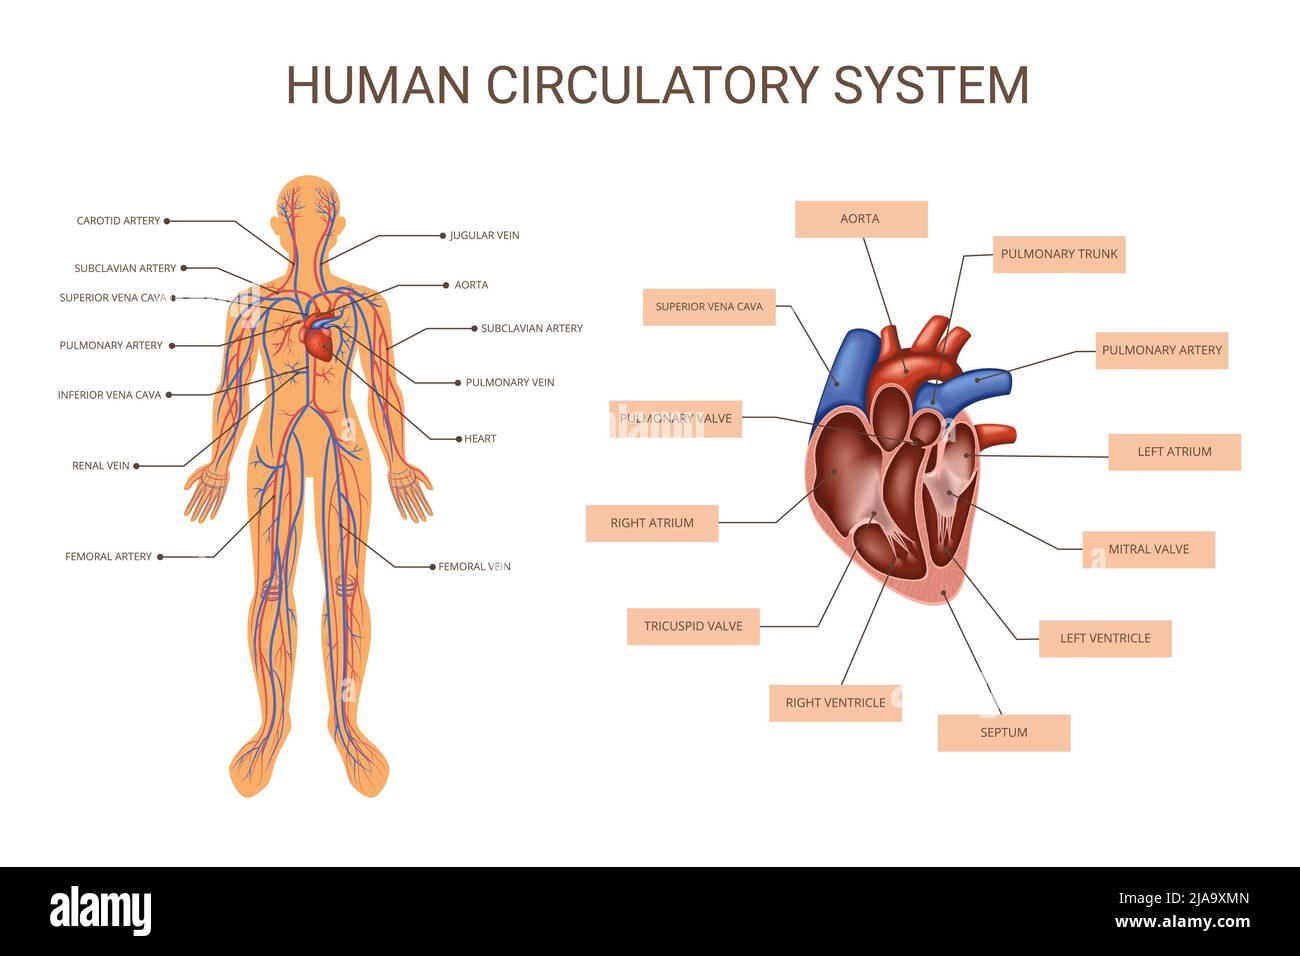 Organsysteme des menschlichen Körpers farbige Infografik mit Beschreibungen des Kreislaufsystems des menschlichen Körpers und der Anatomie des Herzvektors Stock Vektor